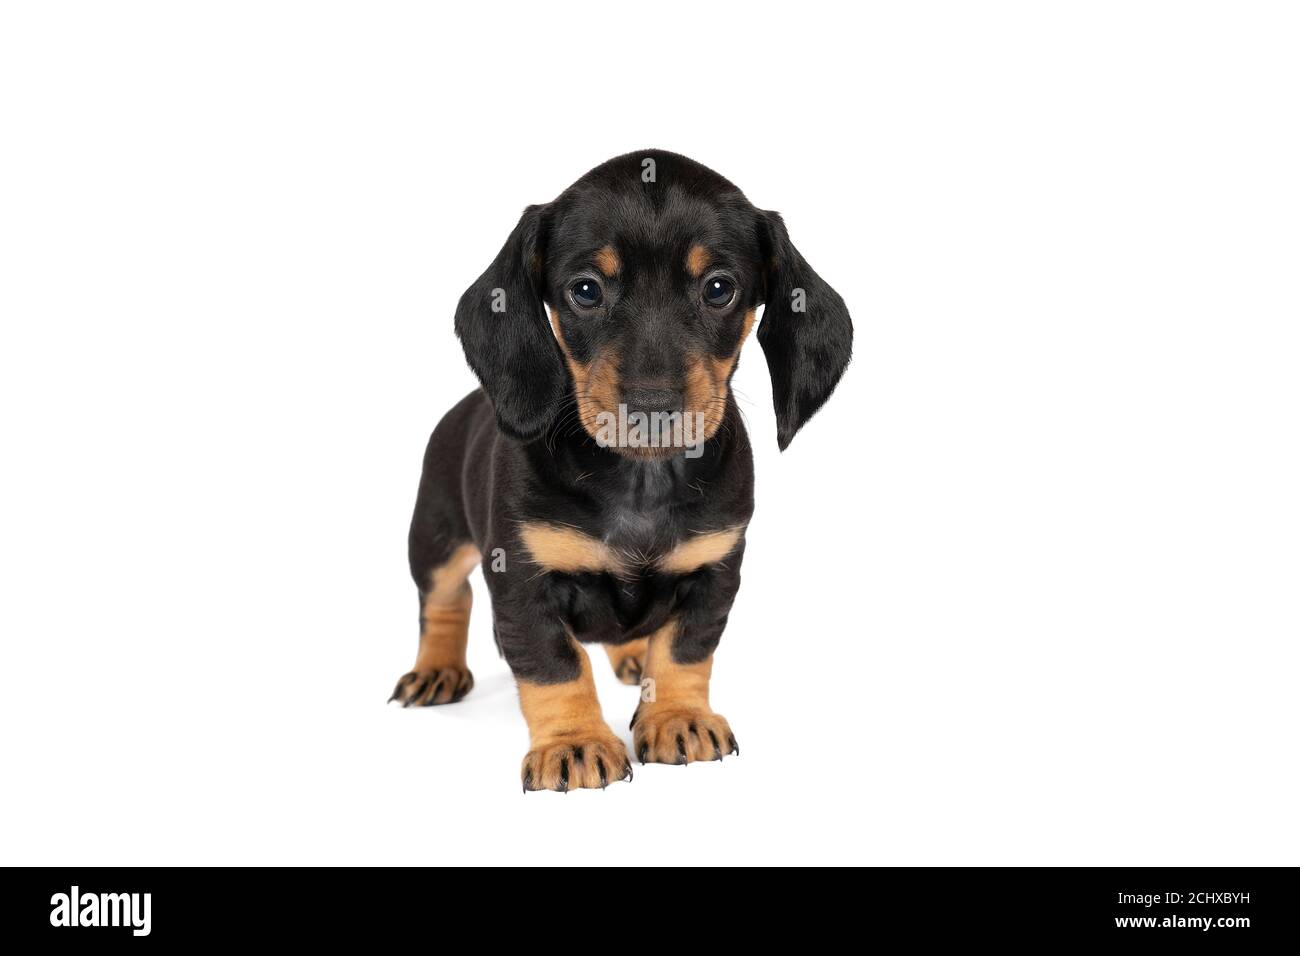 Mallie, a Black & Tan Female Dachshund Puppy 742147